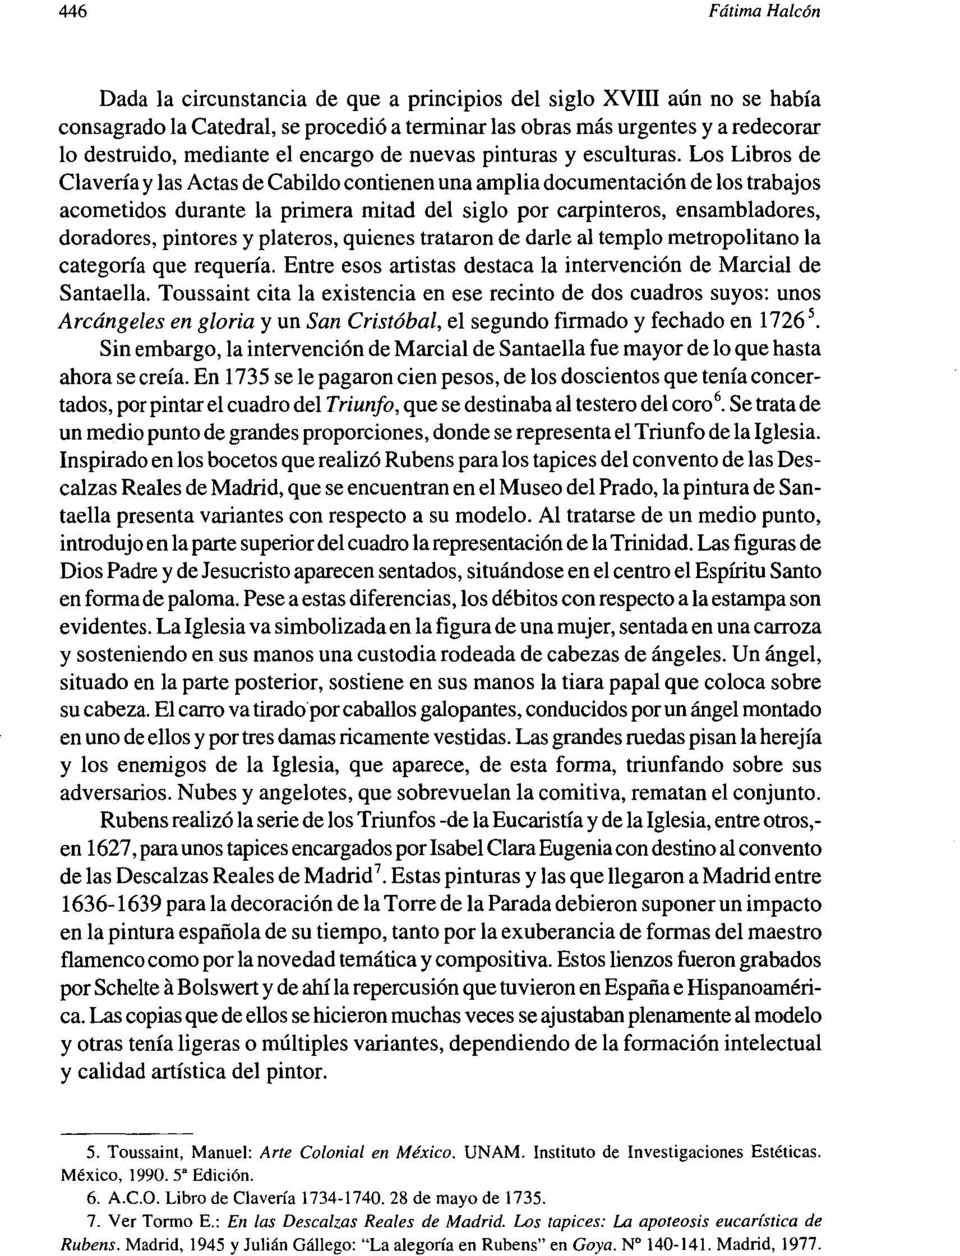 Los Libros de Clavería y las Actas de Cabildo contienen una amplia documentación de los trabajos acometidos durante la primera mitad del siglo por carpinteros, ensambladores, doradores, pintores y